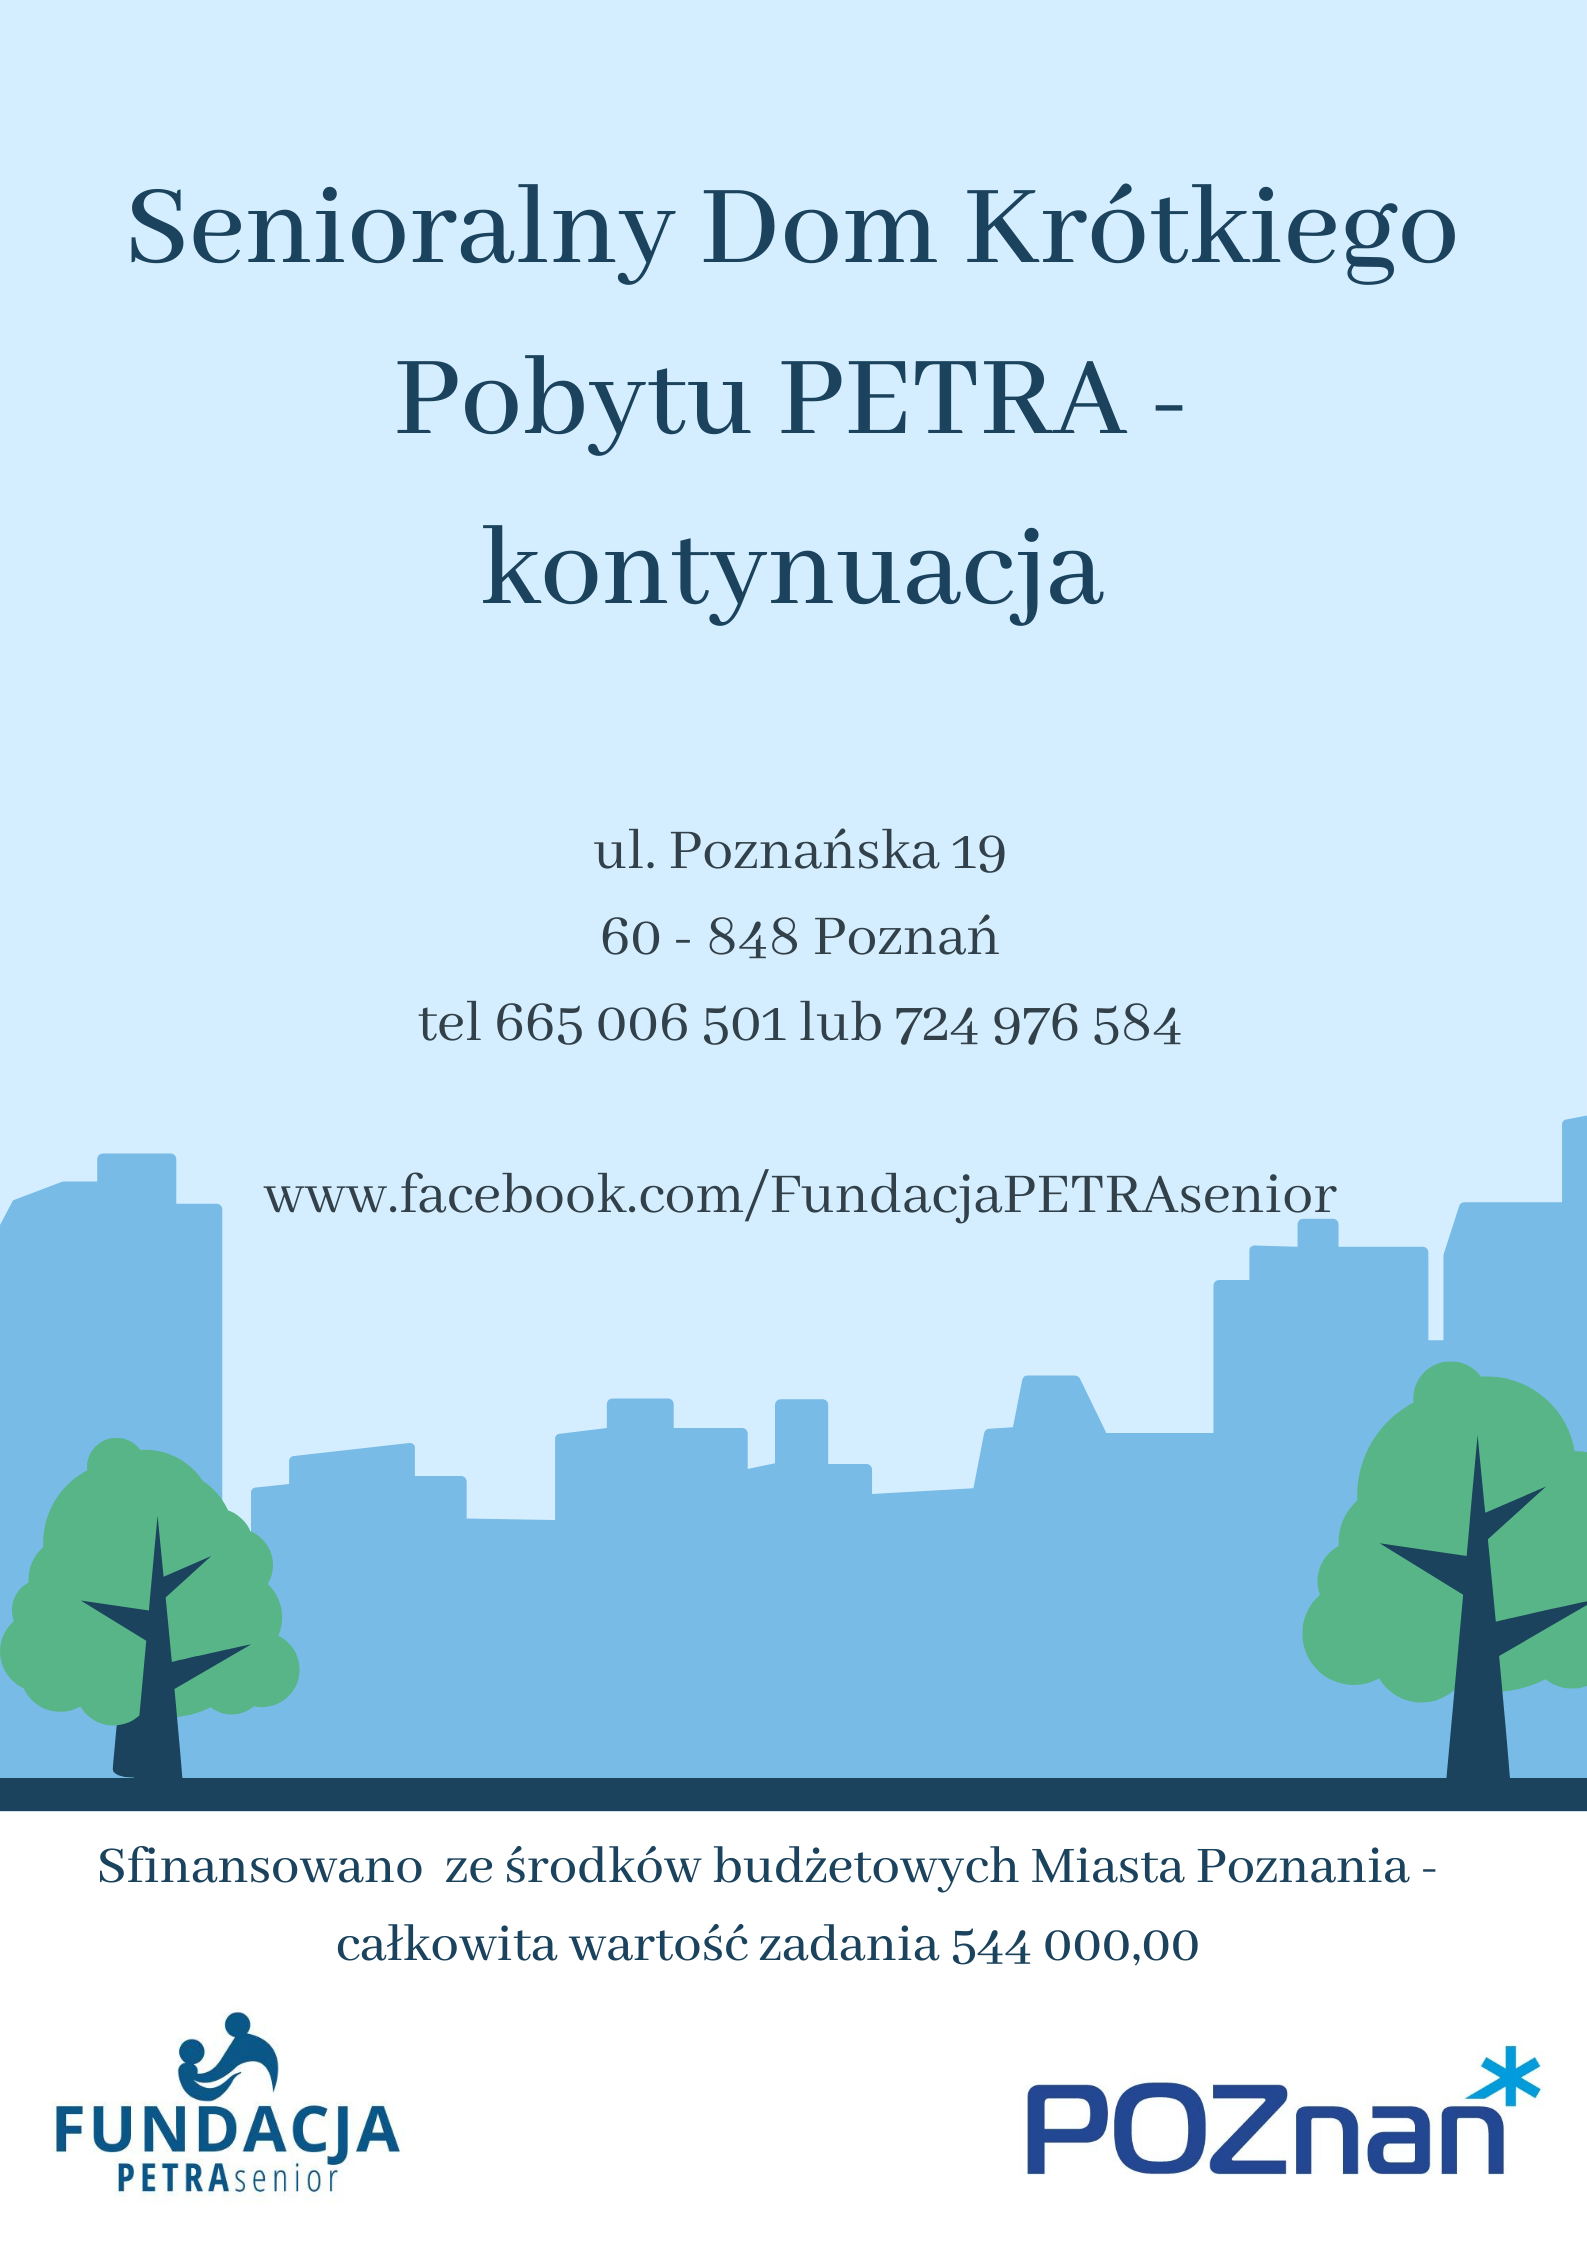 Plakat informuje o możliwości korzystania z opieki w dziennym domu pobytu dla osób starszych niesamodzielnych - Senioralny Dom Krótkiego Pobytu PETRA 
oraz fiansowaniu zadania ze środków budżetowych Miasta Poznania.